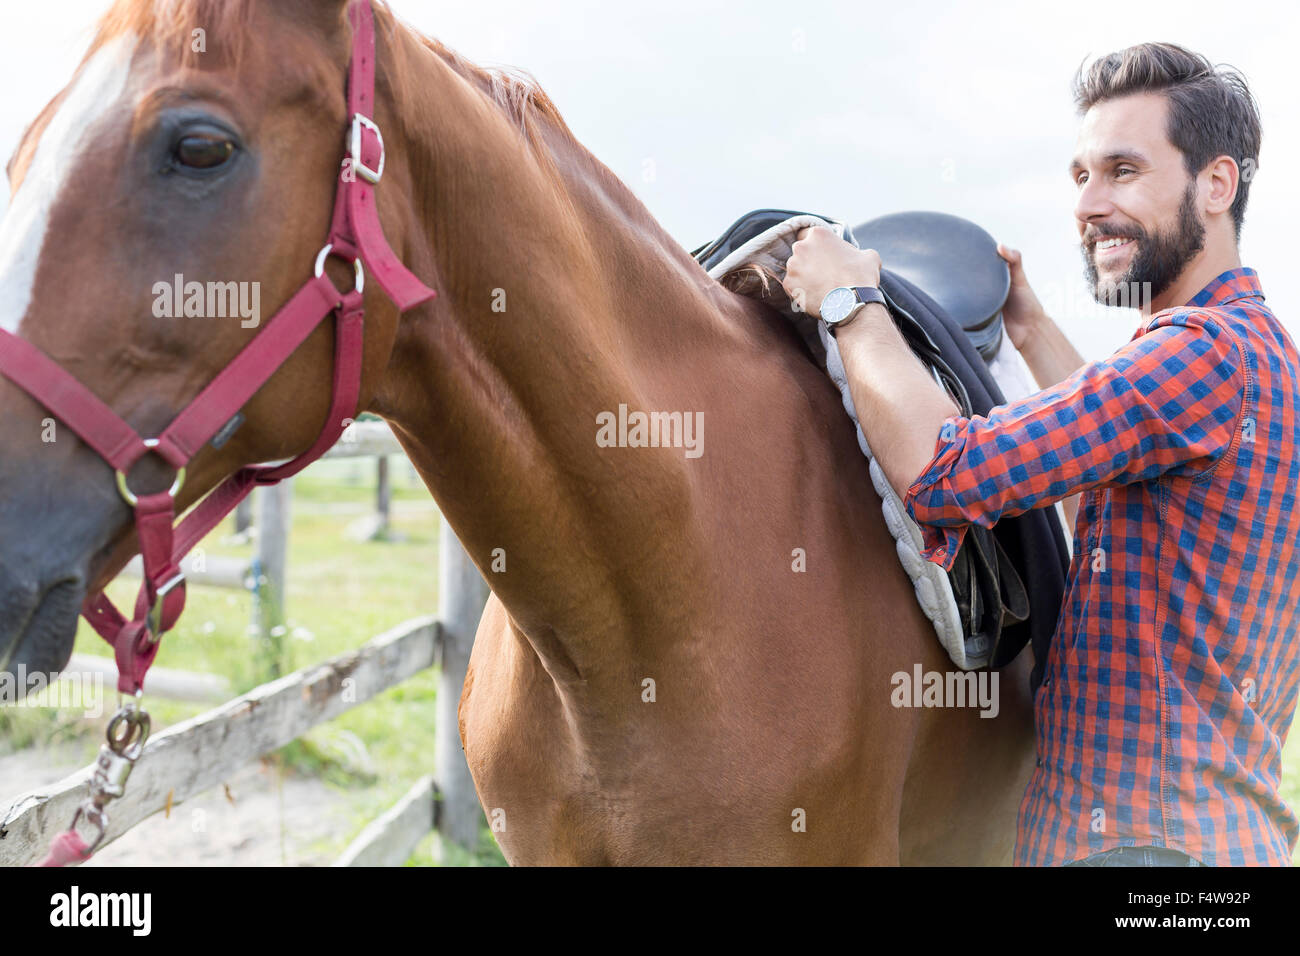 Hombre sonriente quitando la montura del caballo Foto de stock